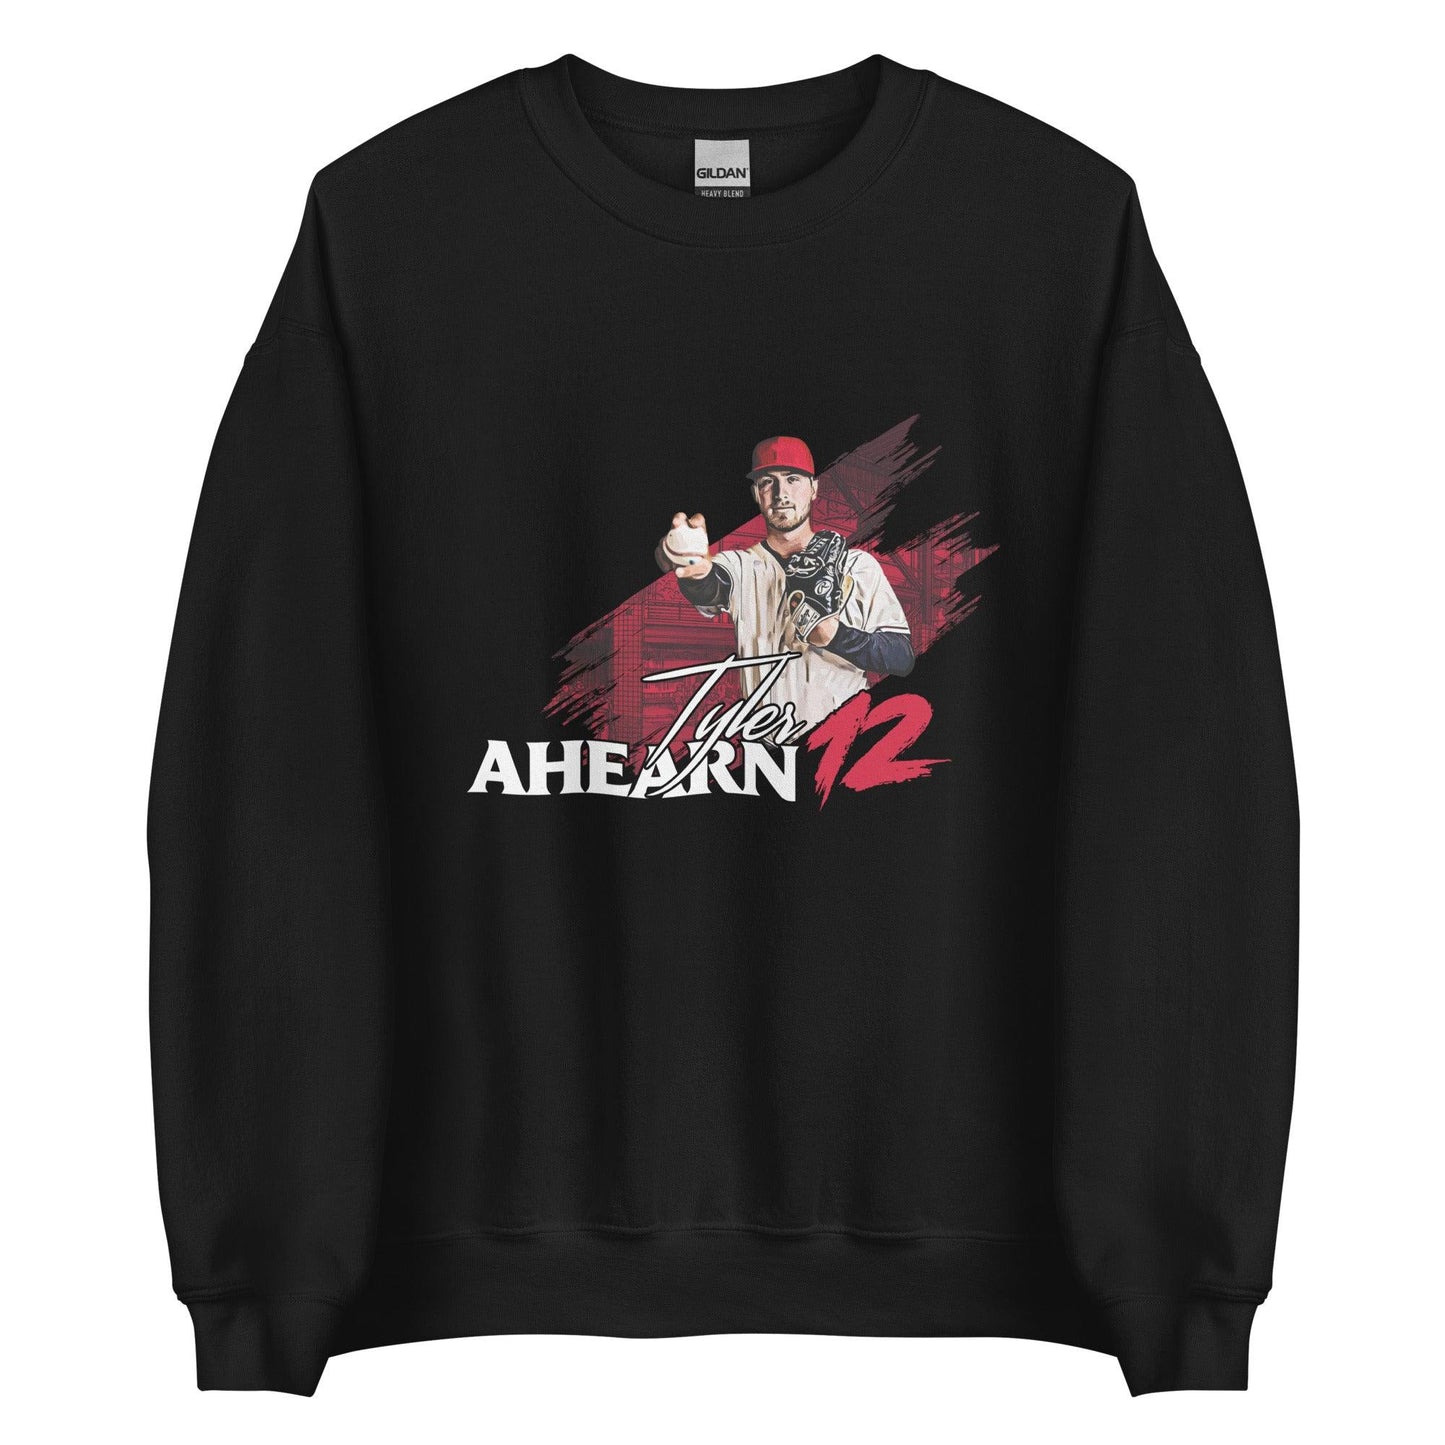 Tyler Ahearn “Essential” Sweatshirt - Fan Arch